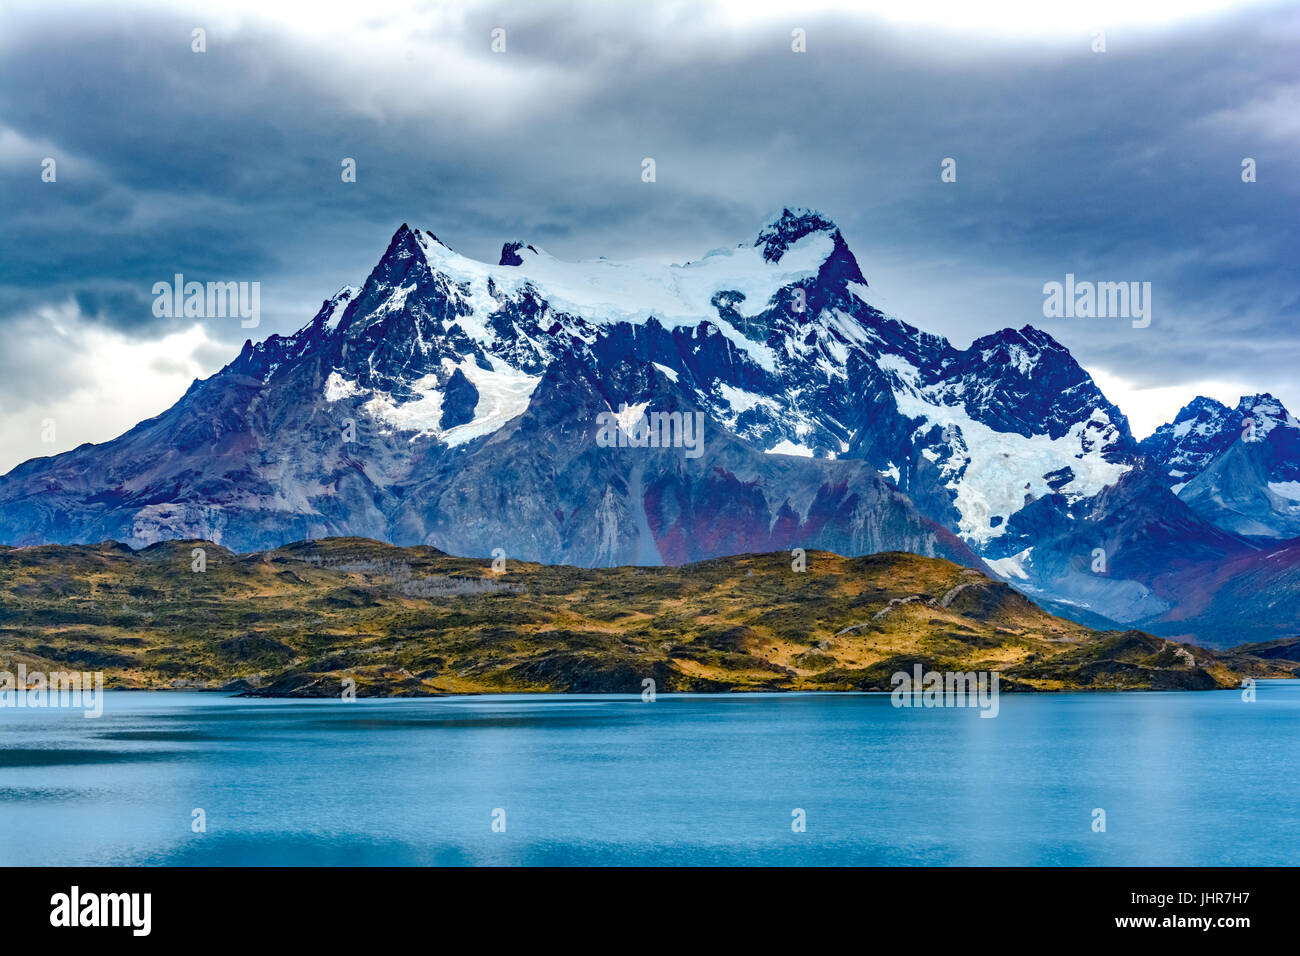 Torres del Paine oltre il lago pehoe, Patagonia, Cile - Patagonia meridionale del campo di ghiaccio, magellanes regione del sud america Foto Stock